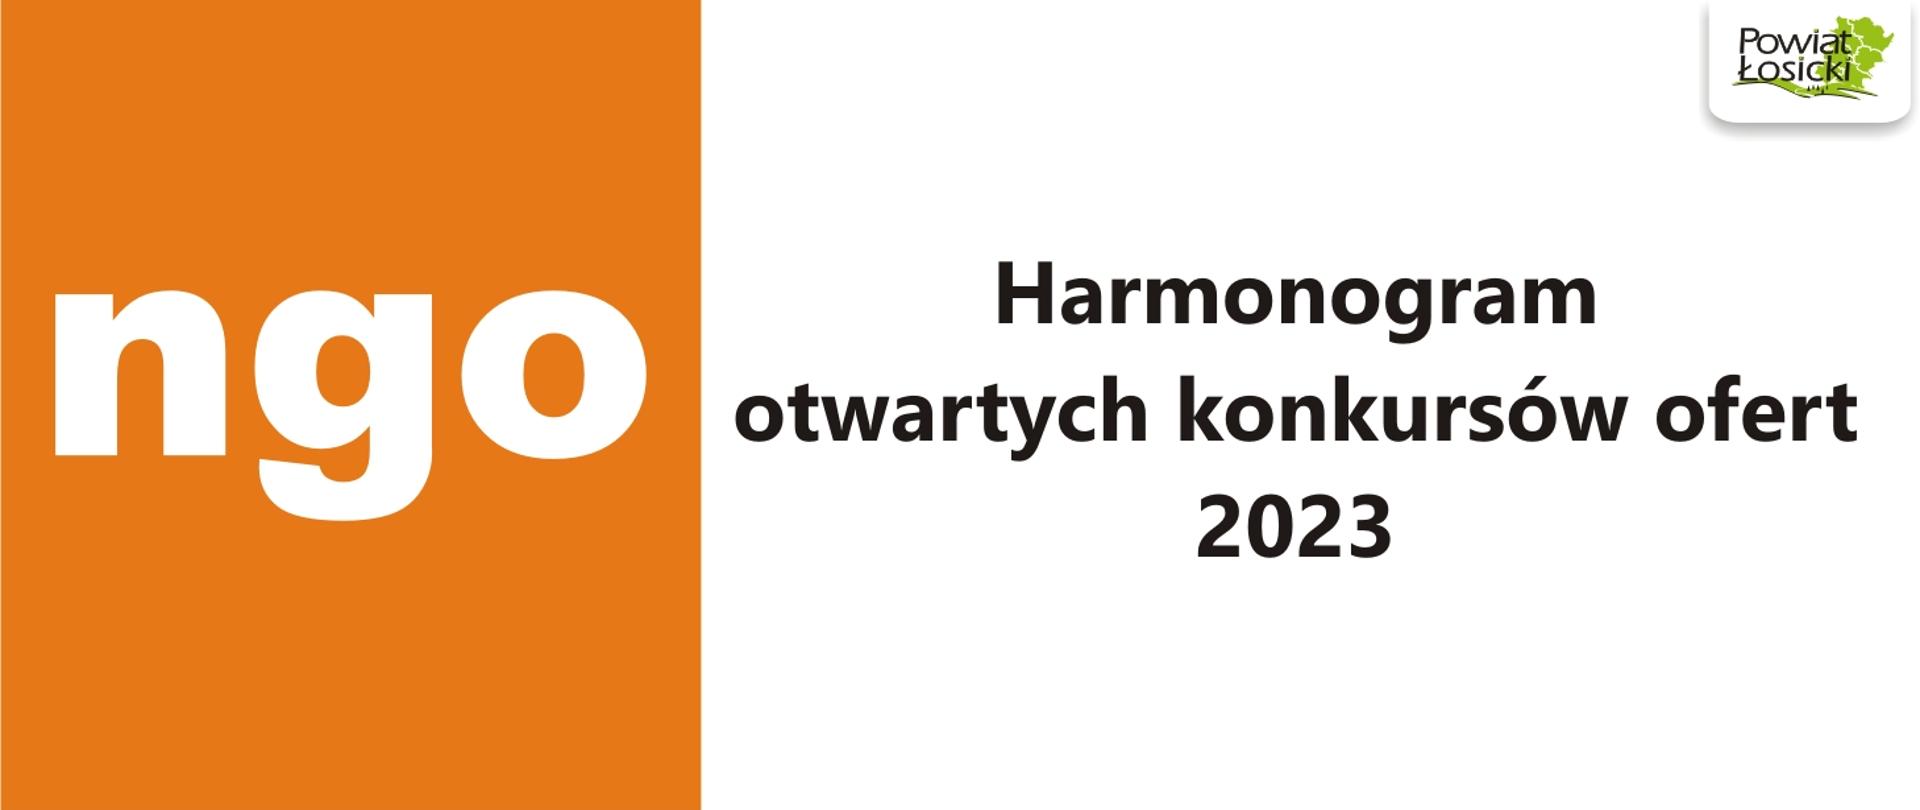 Harmonogram otwartych konkursów ofert 2023
